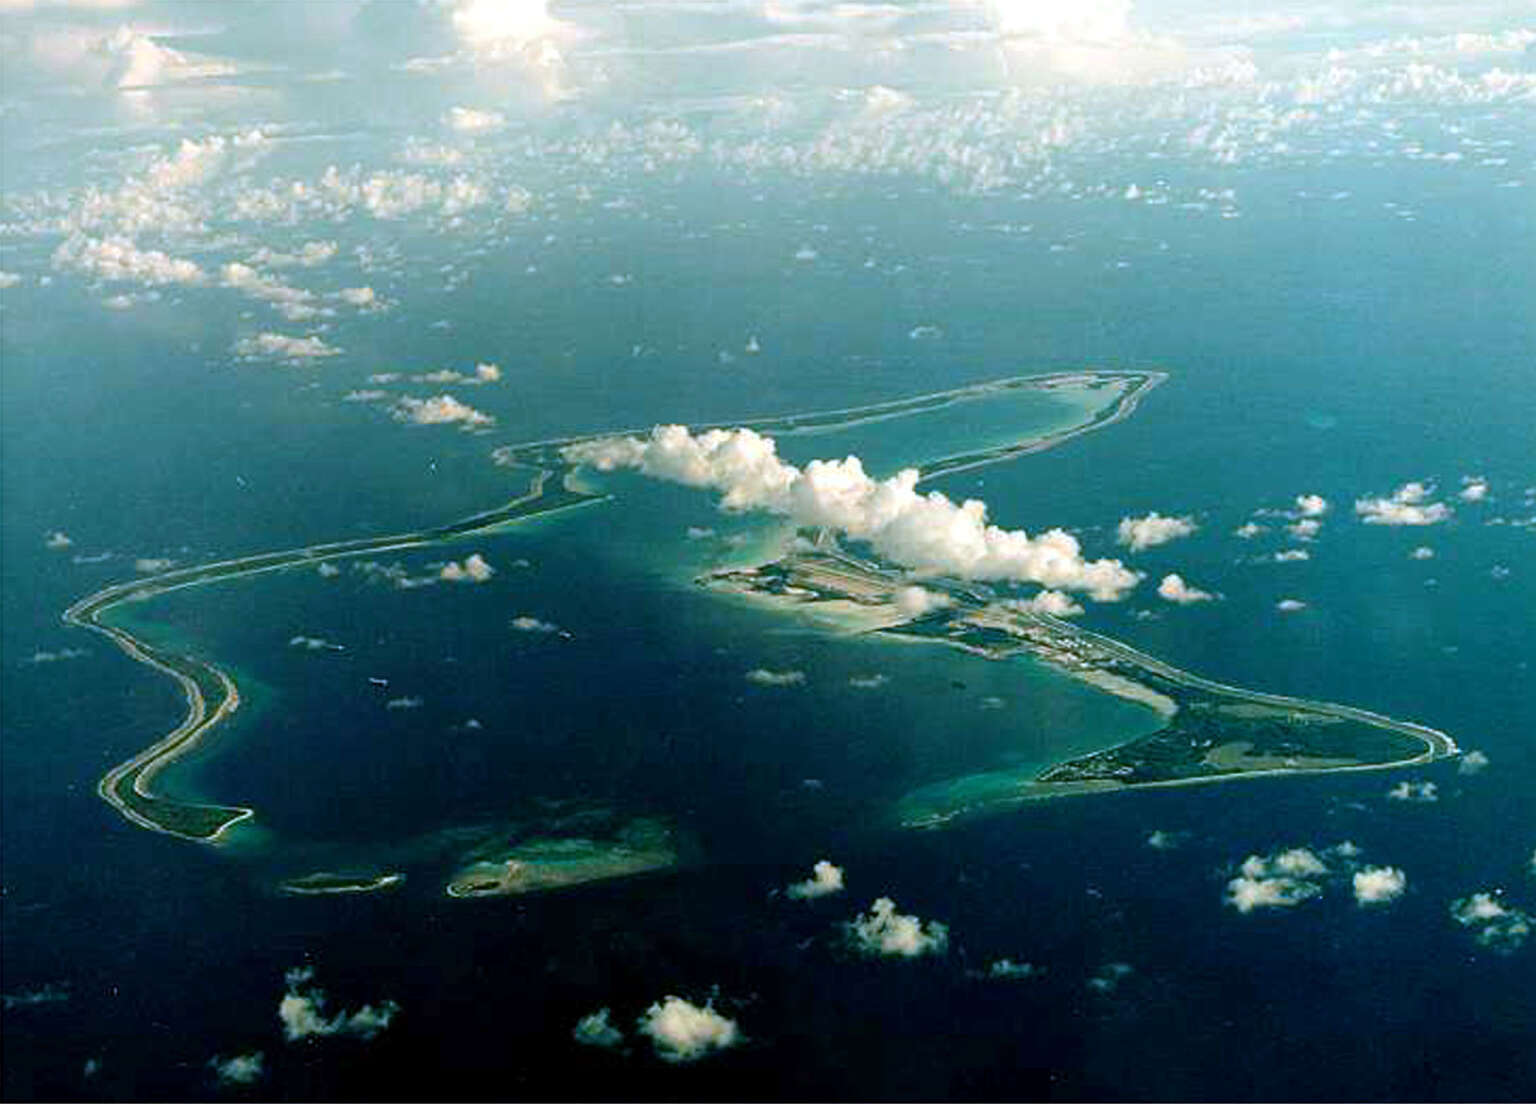 L’île de Diego Garcia, dans l’archipel des Chagos, abrite une base militaire américano-britannique.